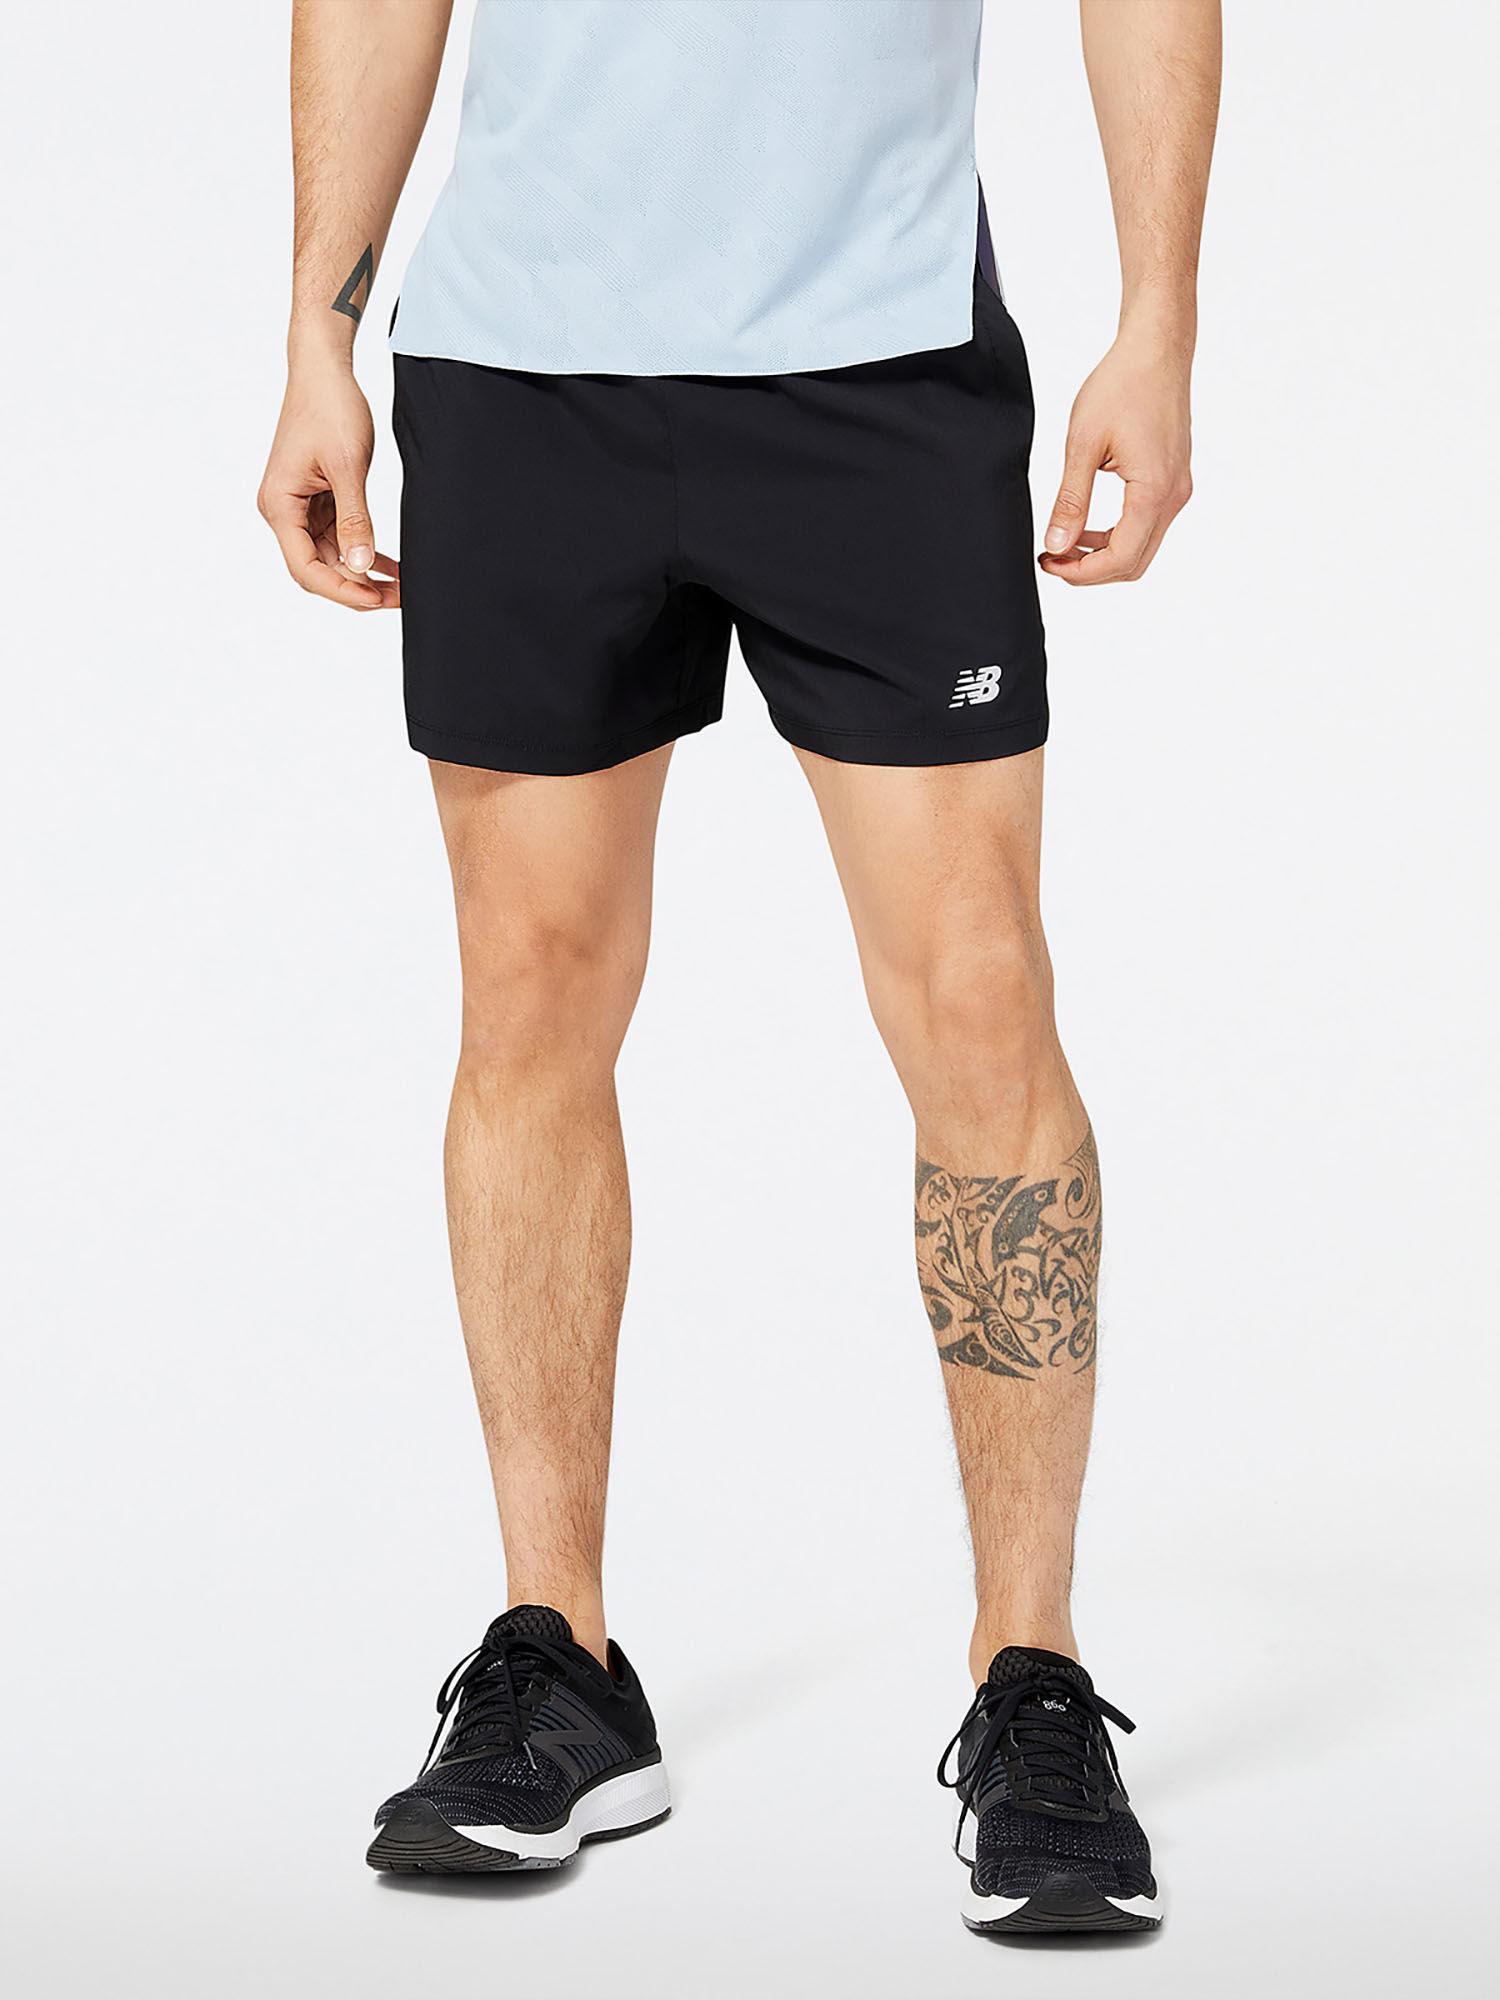 men-black-mid-rise-sports-shorts